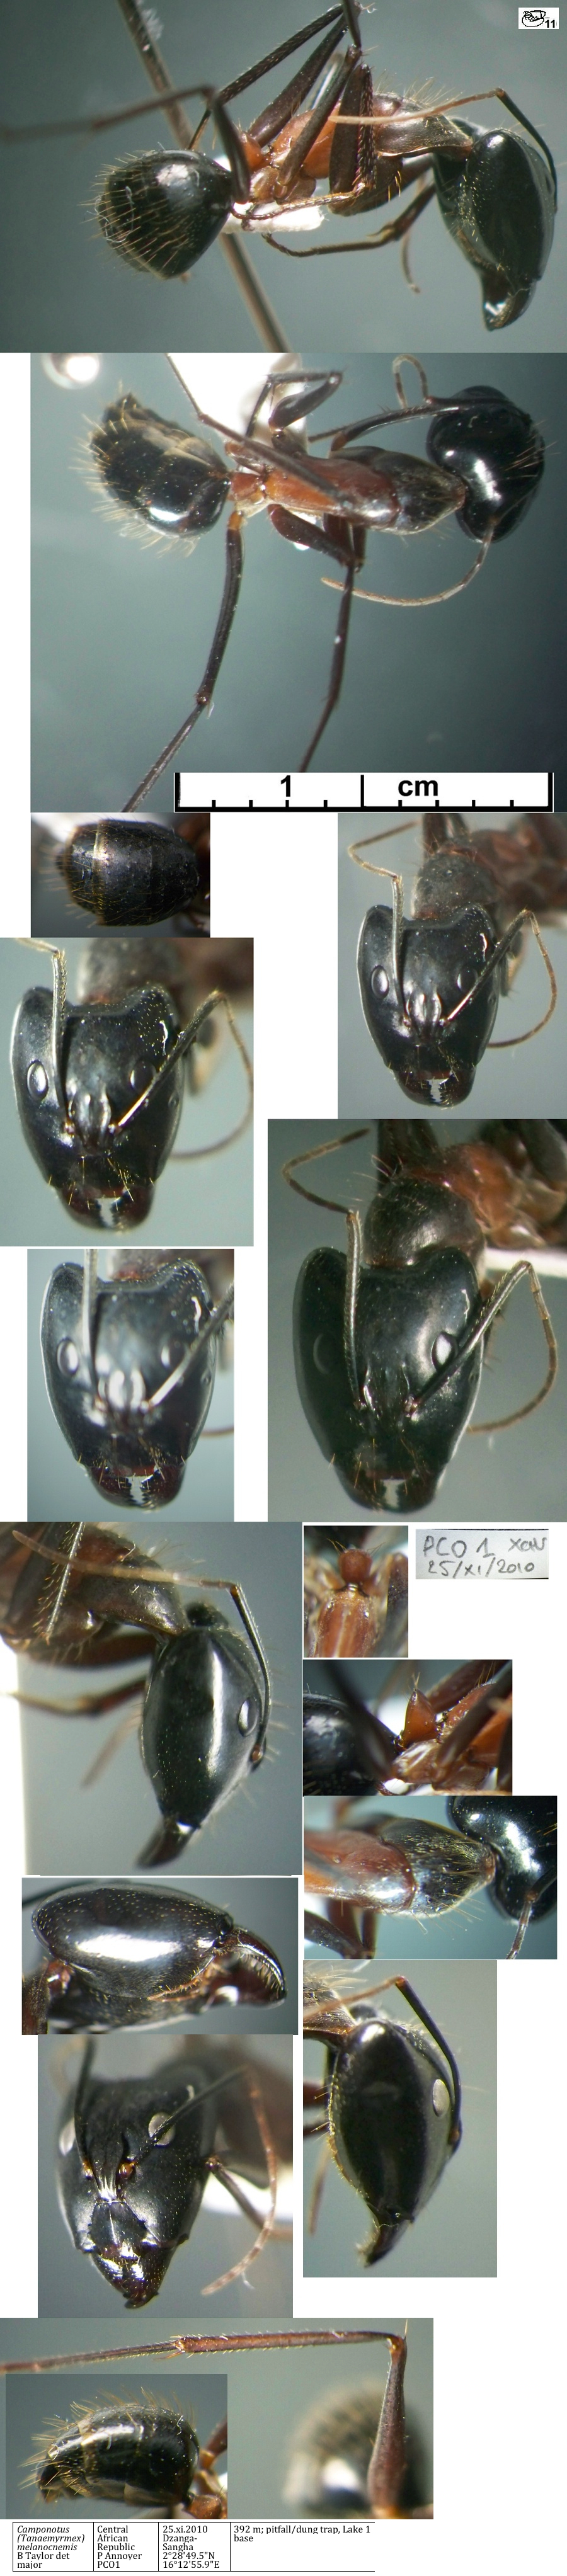 {Camponotus maculatus melanocnemis minor}